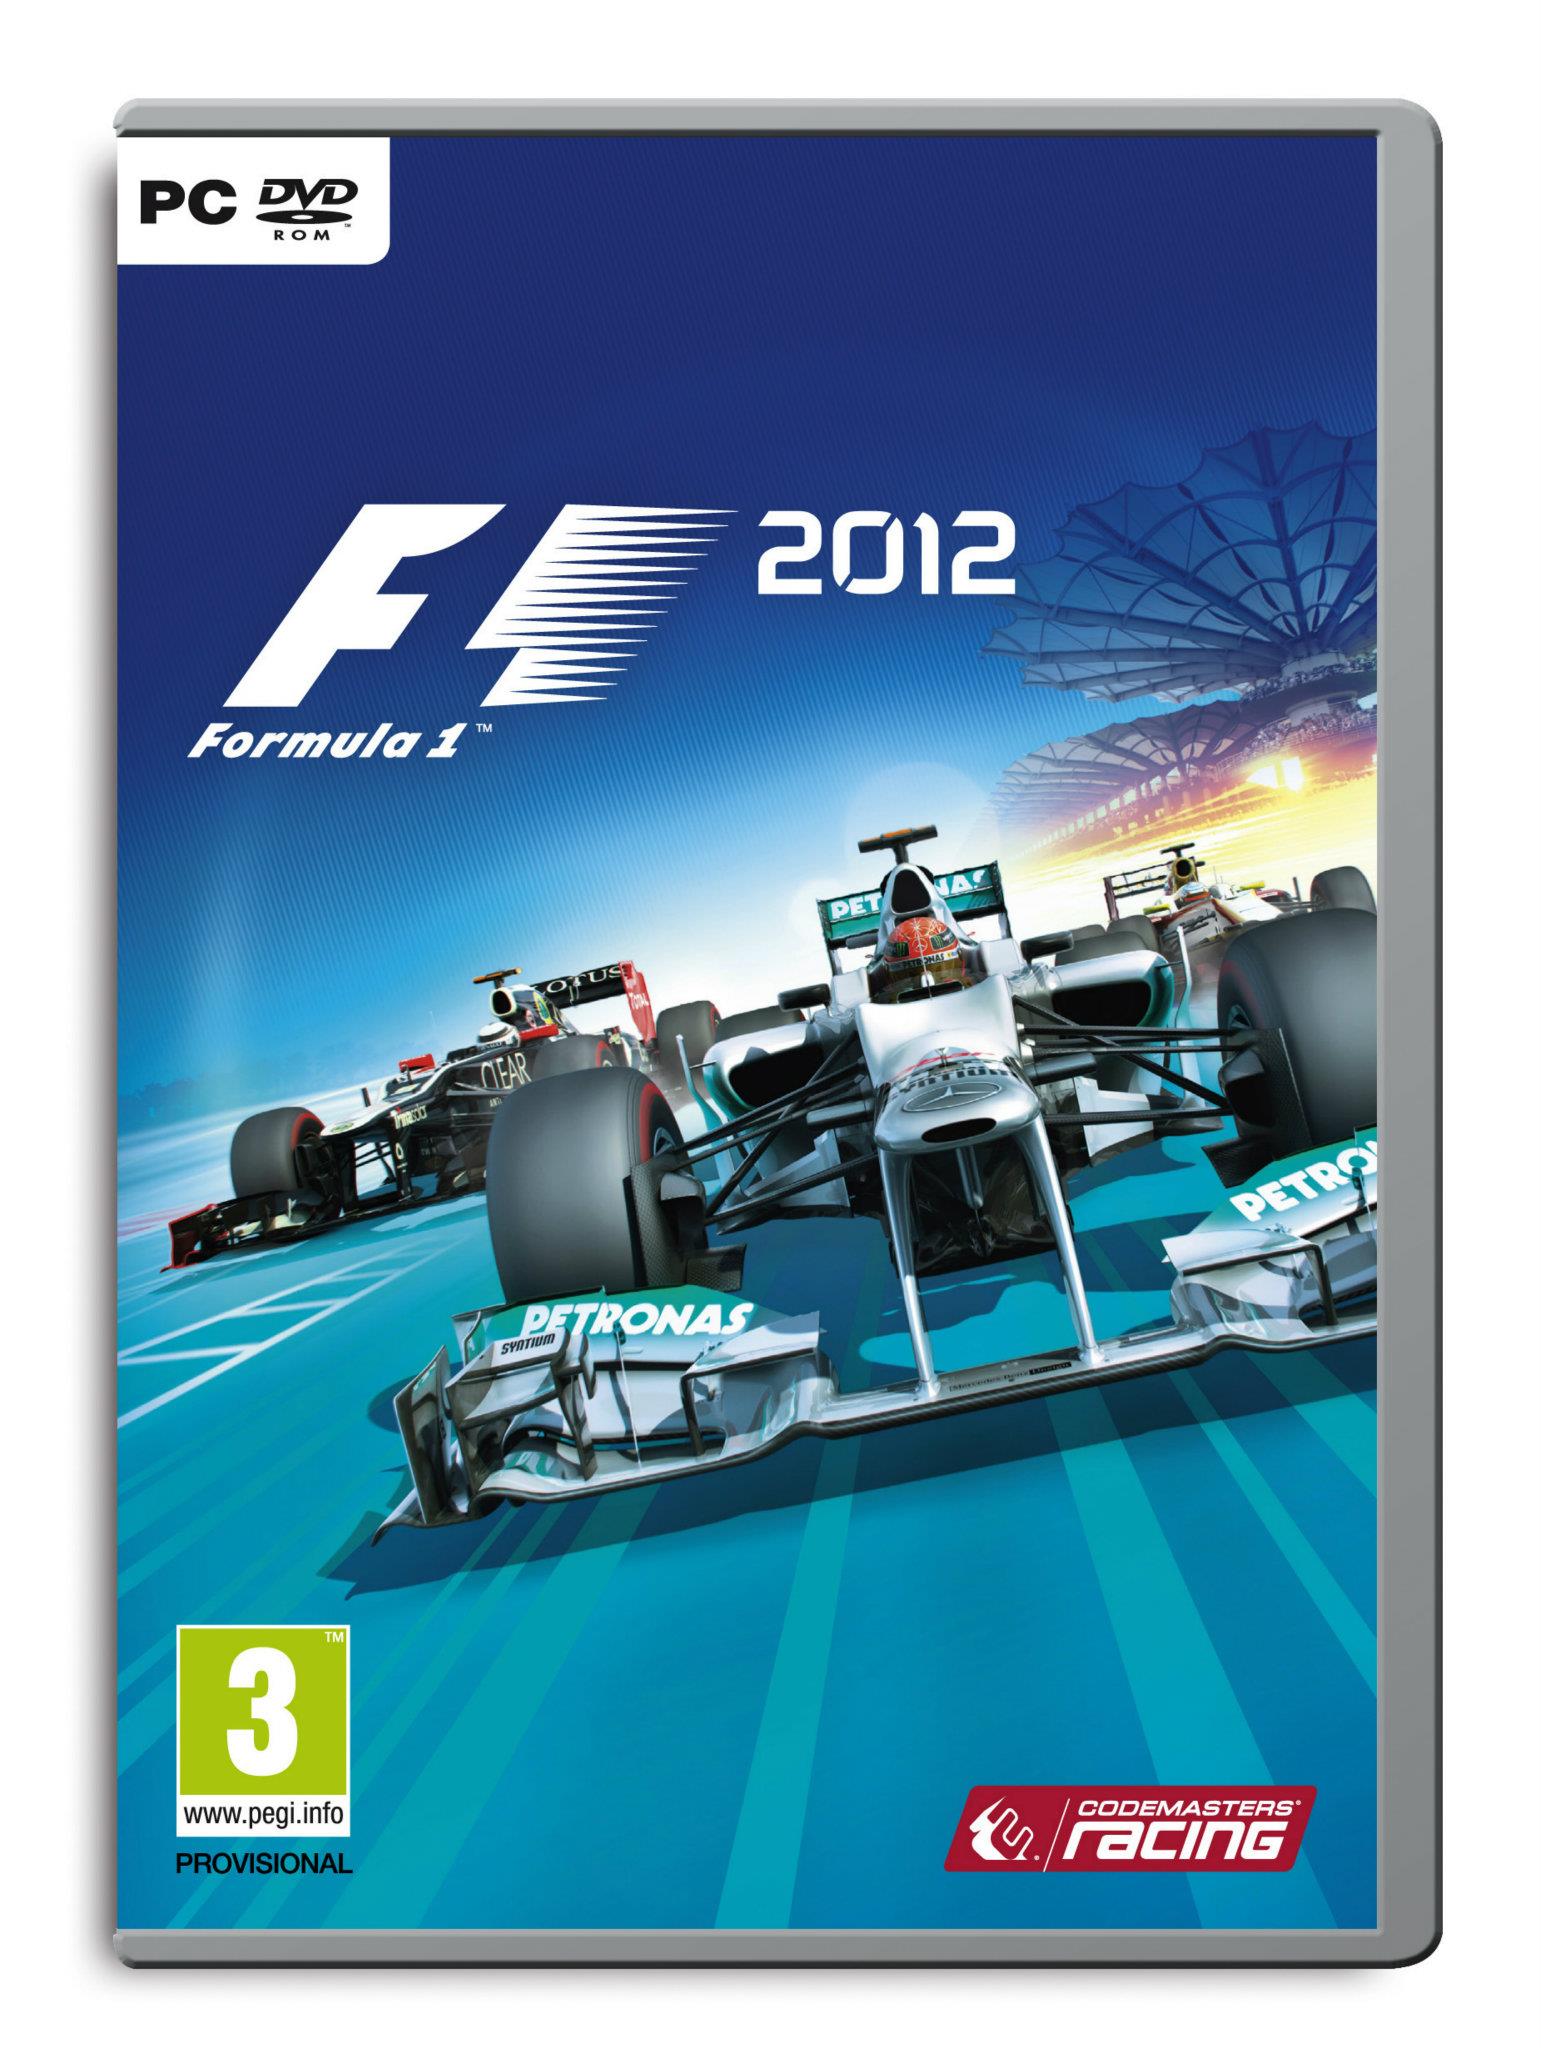 Rozhodněte o obalu krabičky F1 2012 67257